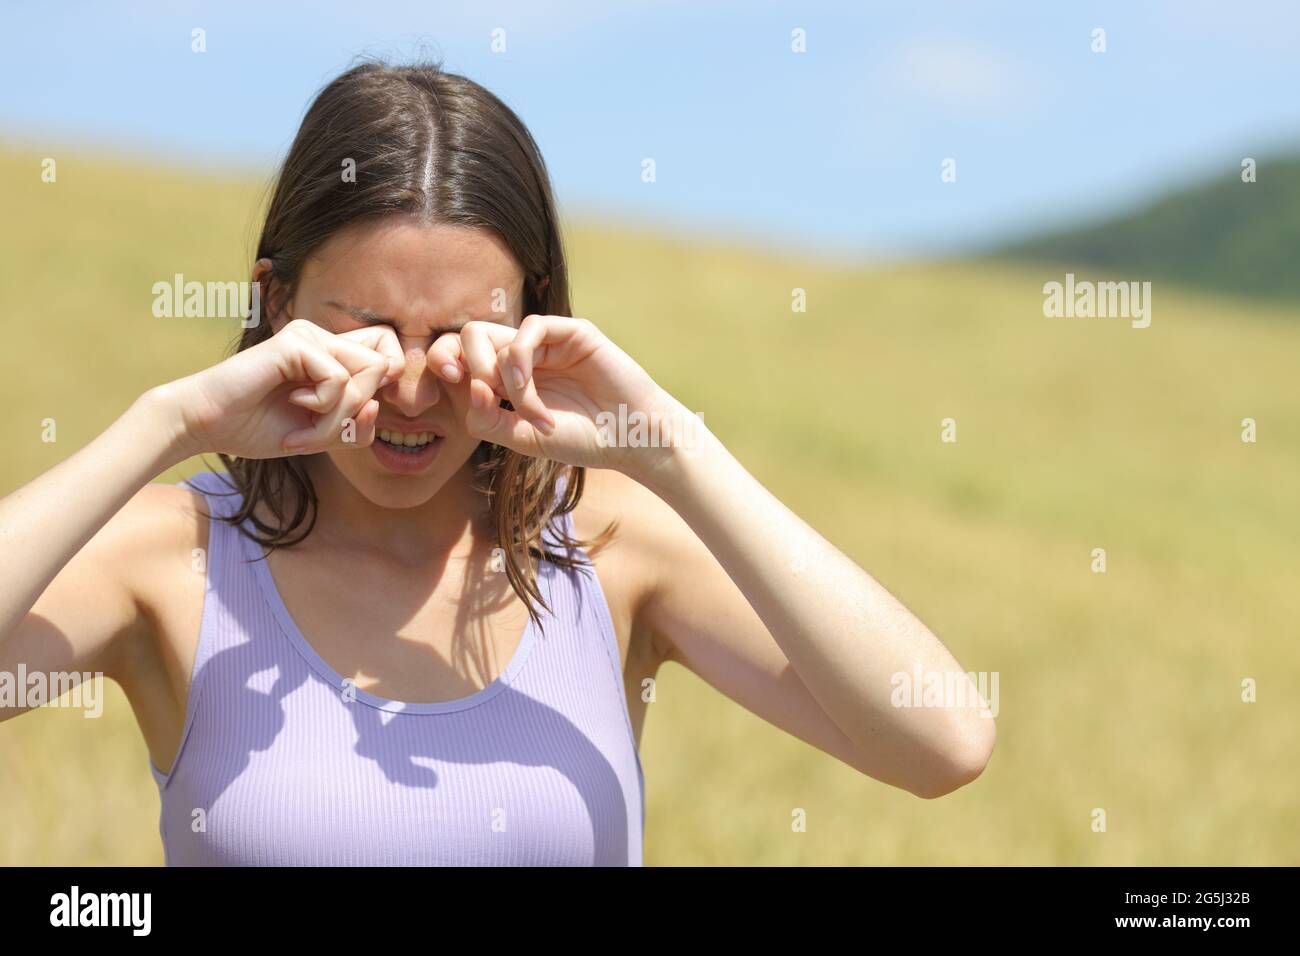 Vue de face d'une femme allergique qui se gratte les yeux dans un champ de blé Banque D'Images